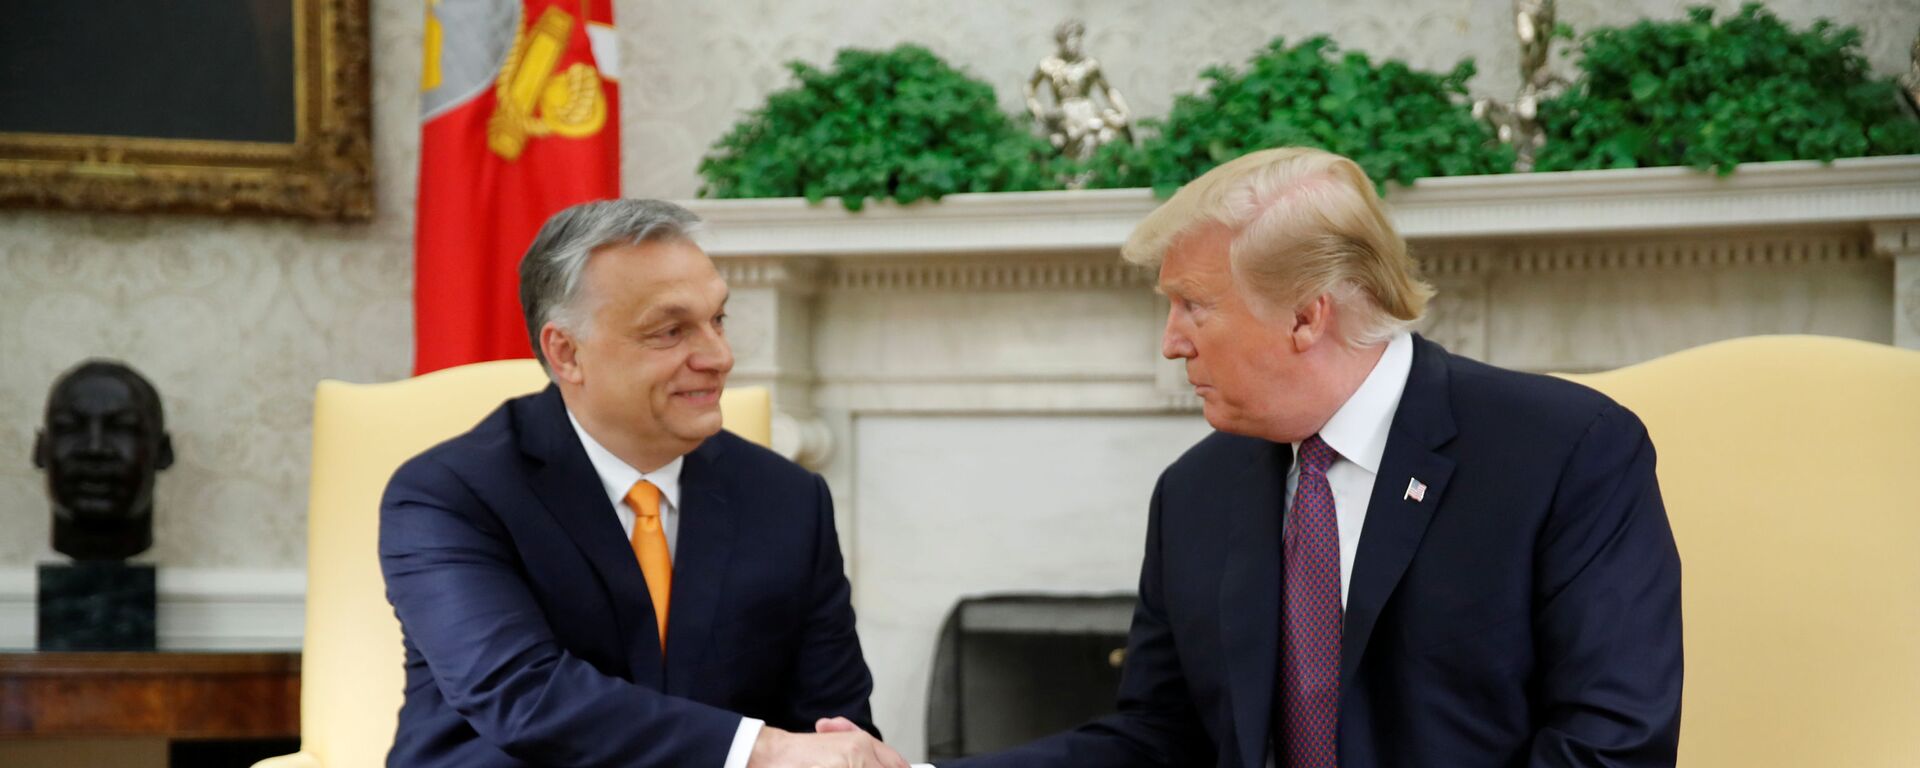 Víktor Orbán, primer ministro de Hungría, y Donald Trump, presidente de EEUU - Sputnik Mundo, 1920, 14.05.2019